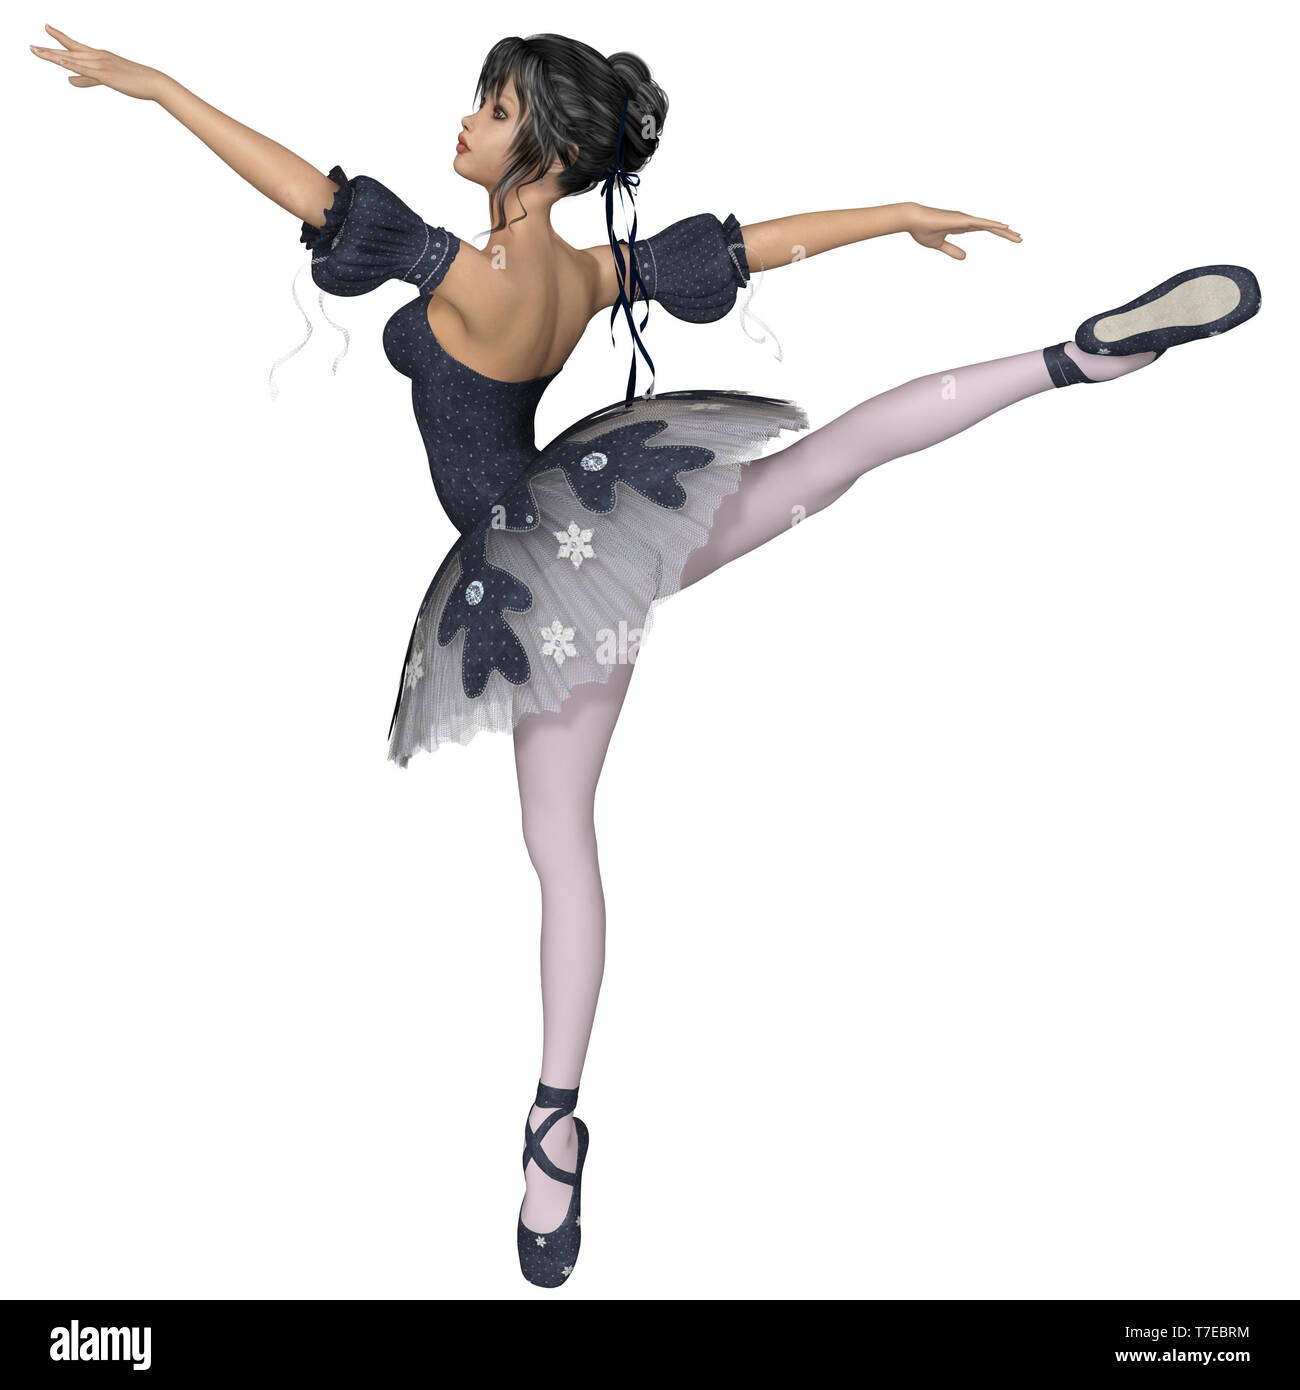 Dance arabesque immagini e fotografie stock ad alta risoluzione - Alamy